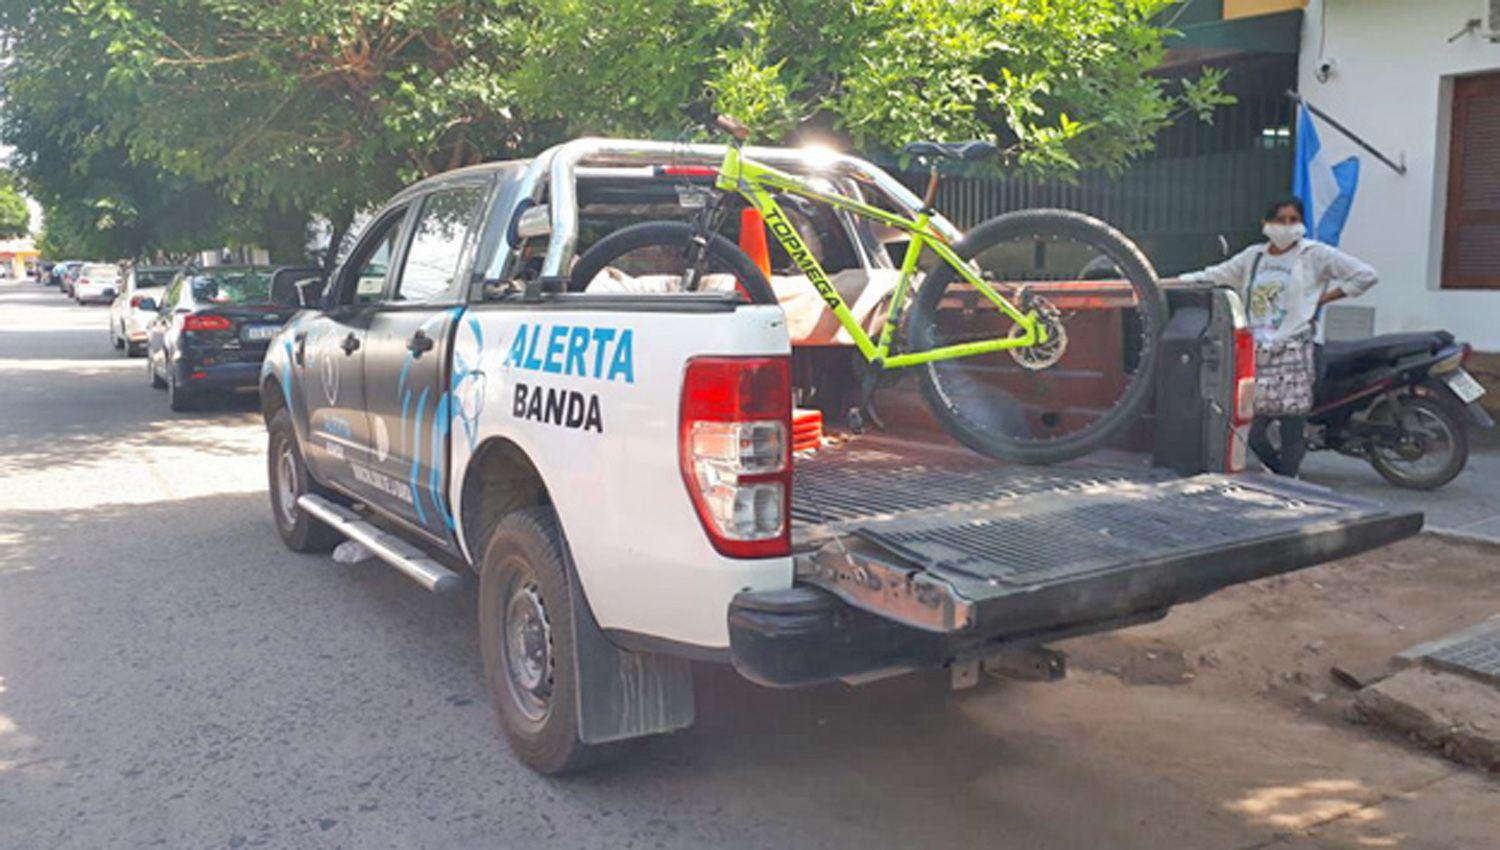 Recuperan una bicicleta valuada en maacutes de 35 mil que habiacutea sido robada horas antes